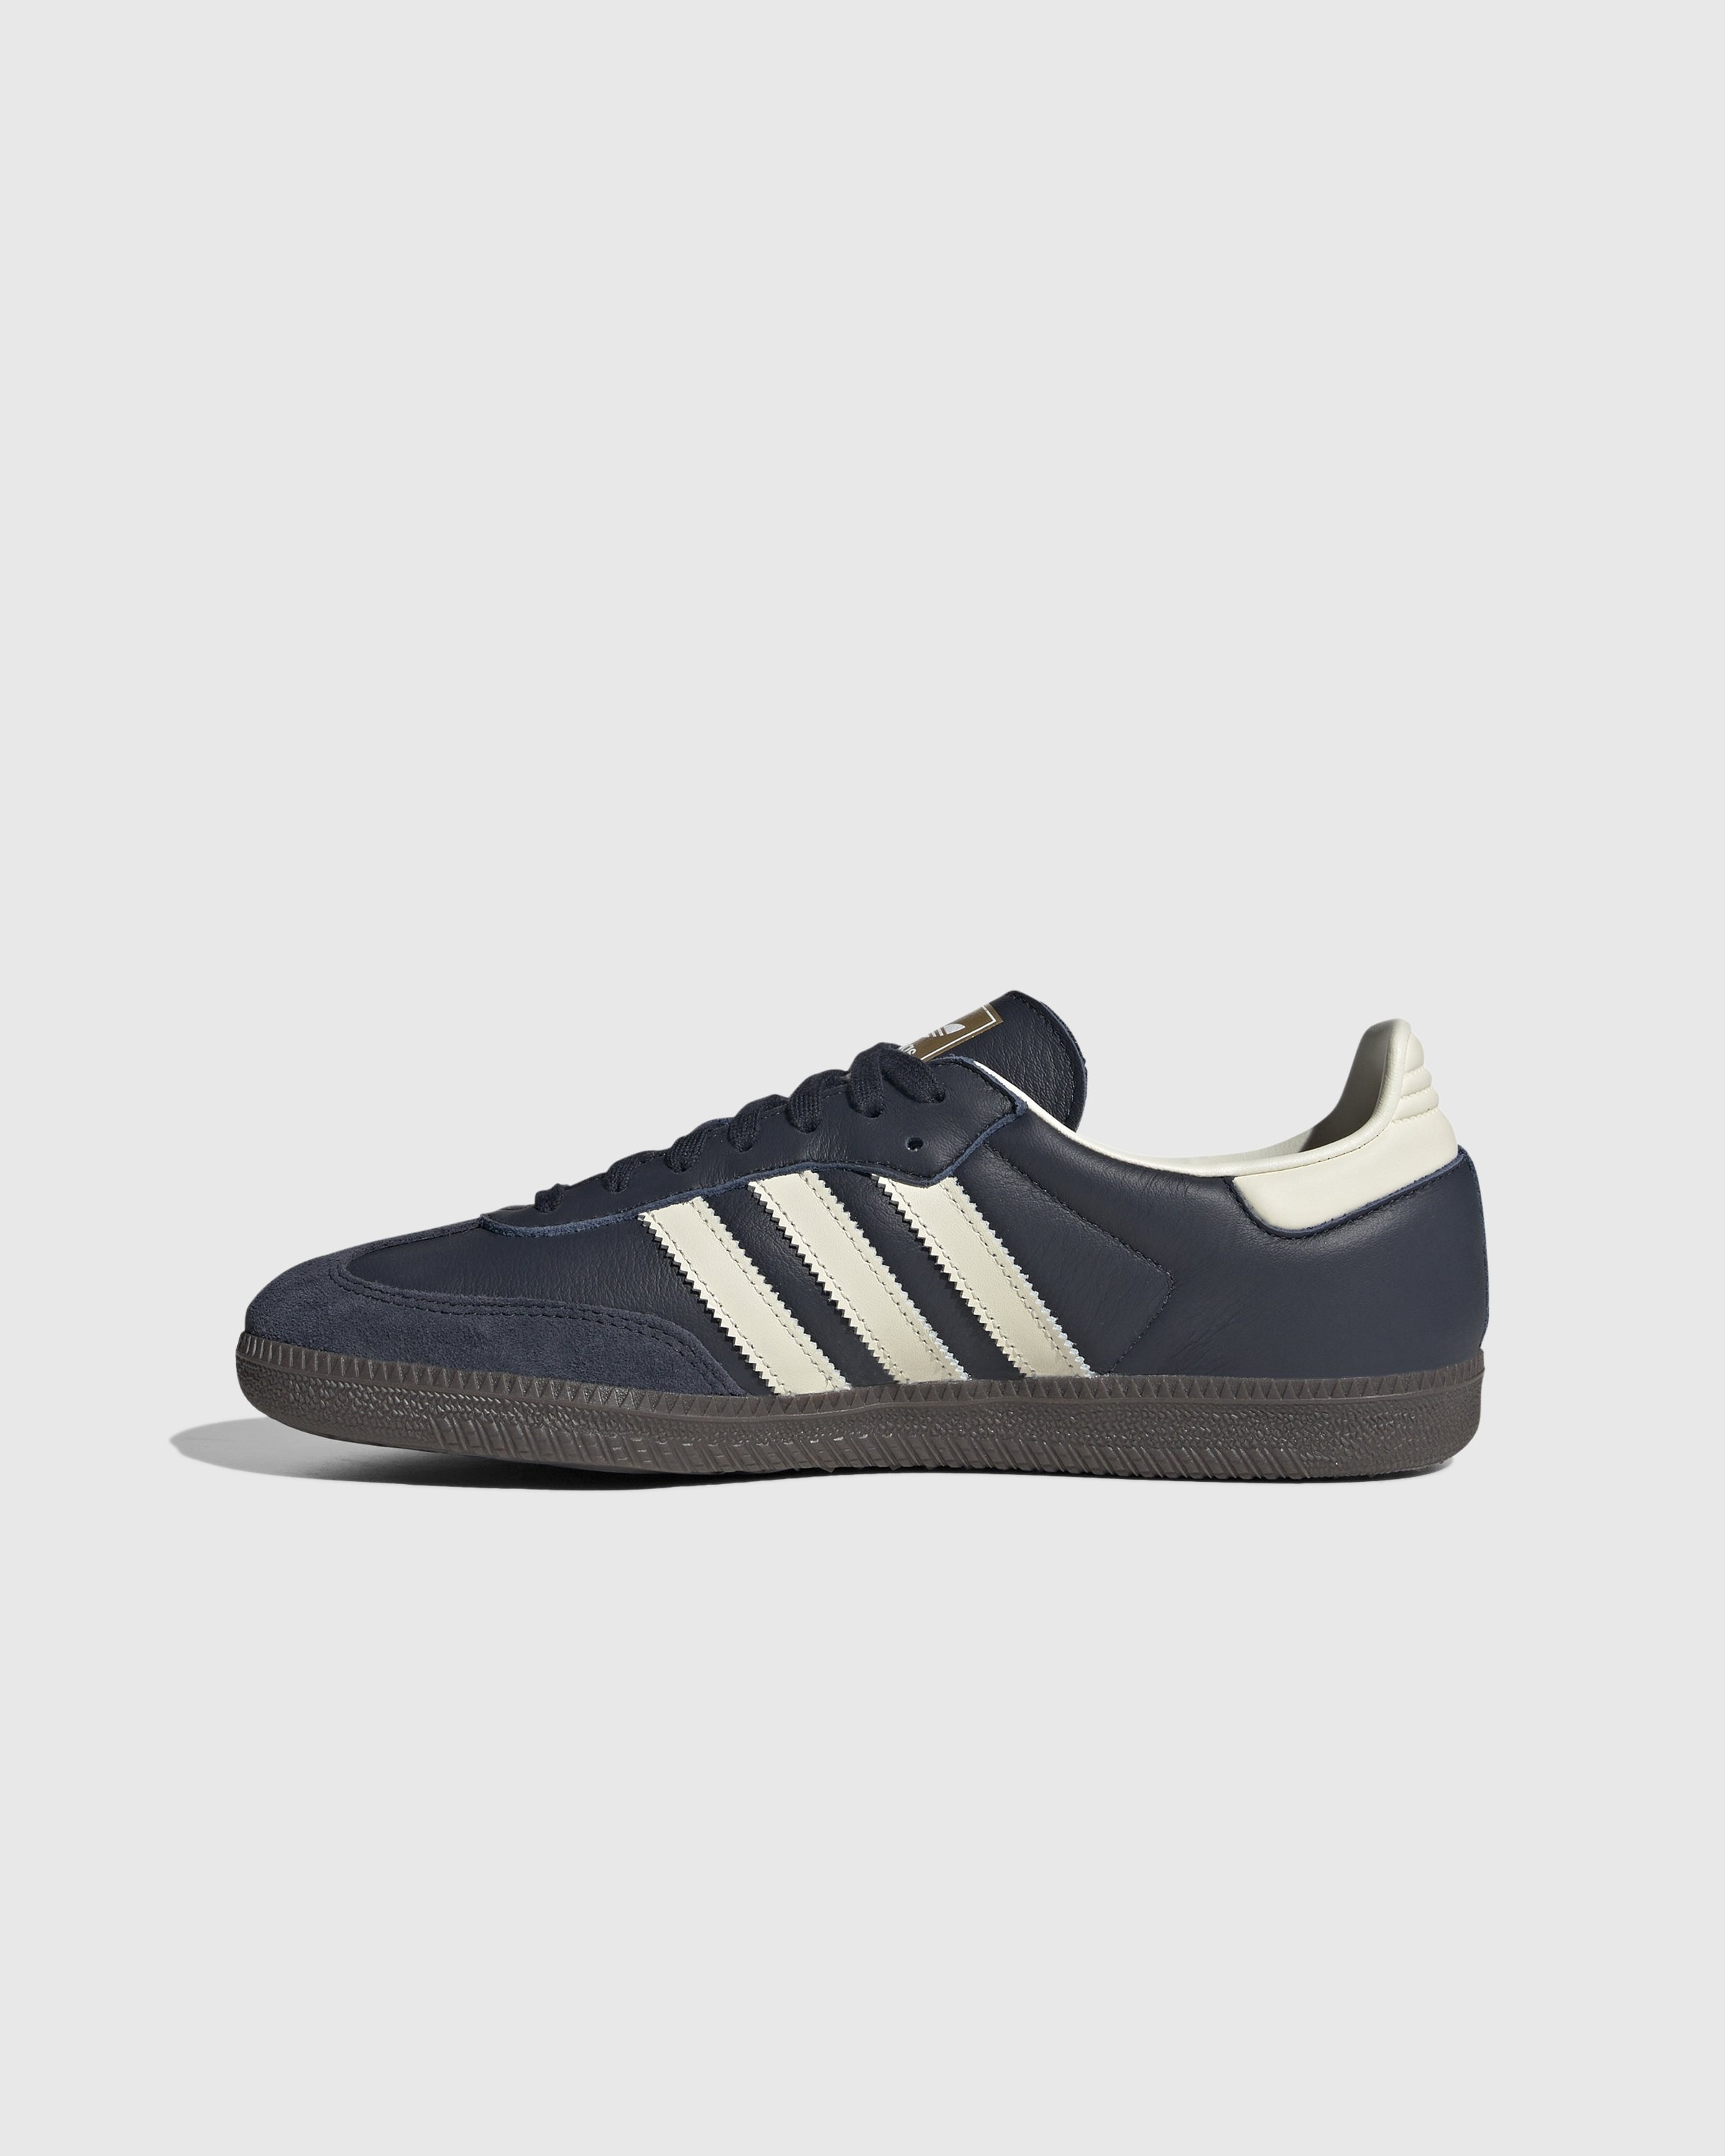 Adidas – Samba OG Navy/White  - Sneakers - Blue - Image 2